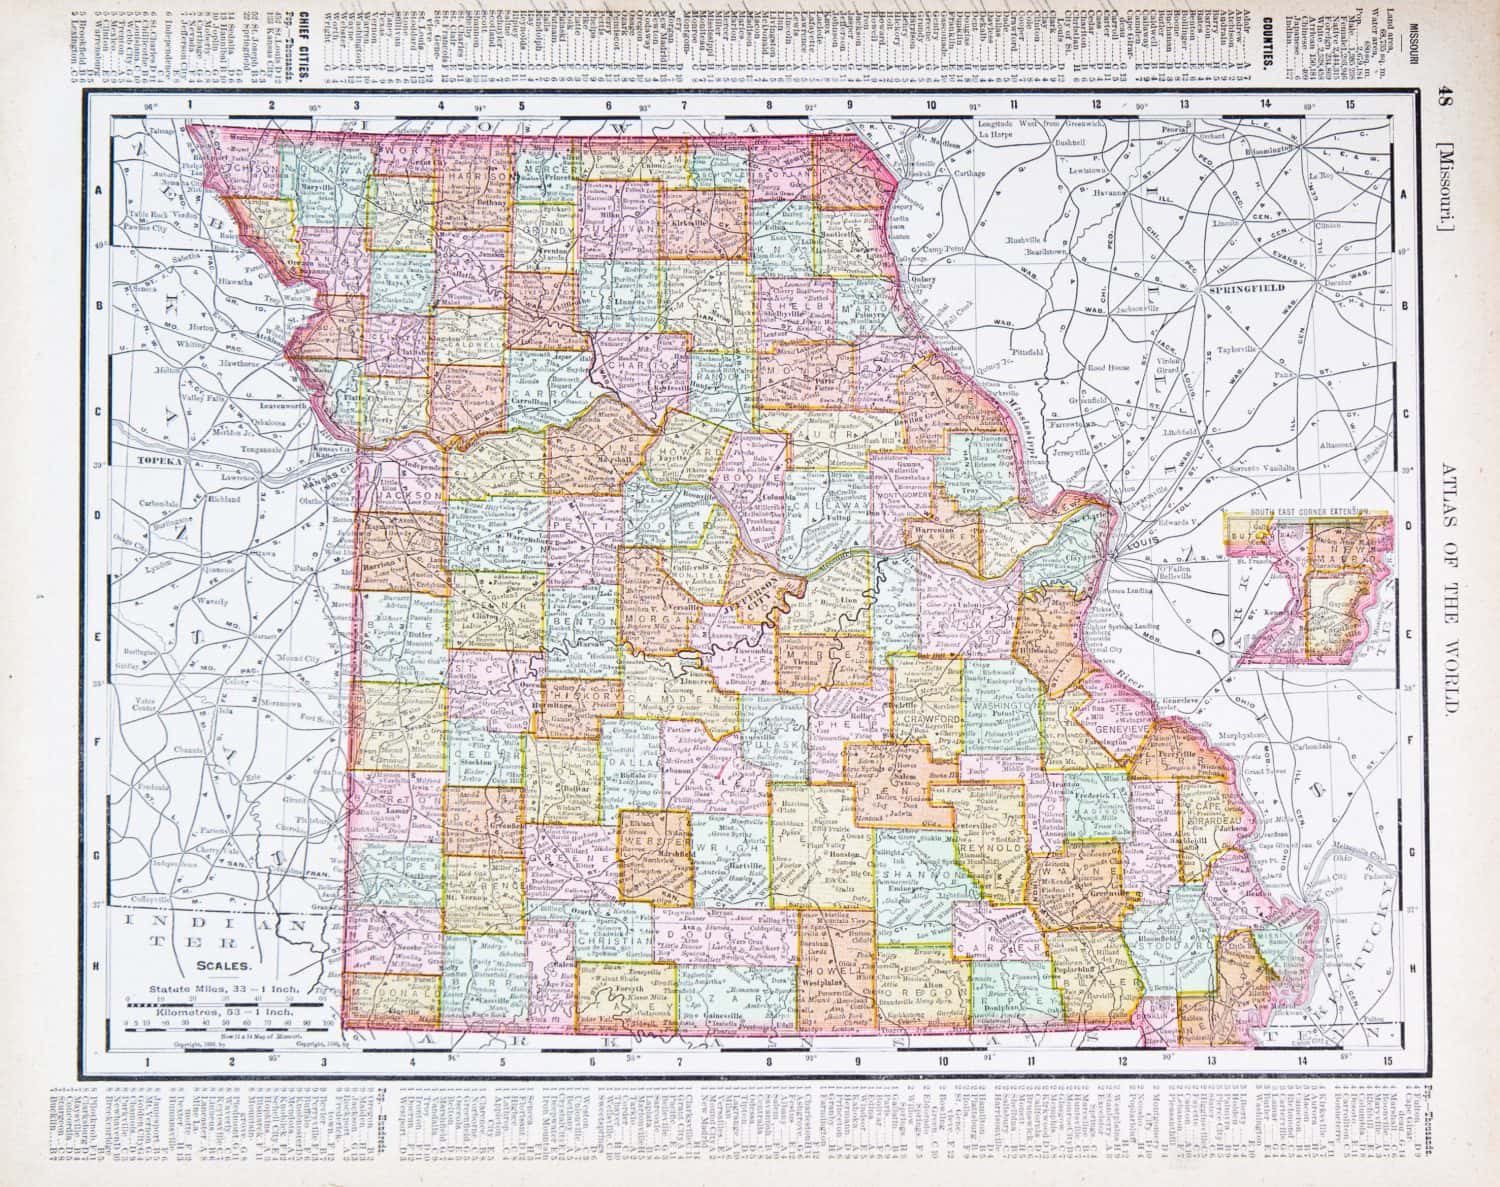 Una mappa del Missouri, USA, dall'Atlante del mondo di Spofford, stampata negli Stati Uniti nel 1900, creata da Rand McNally & Co.